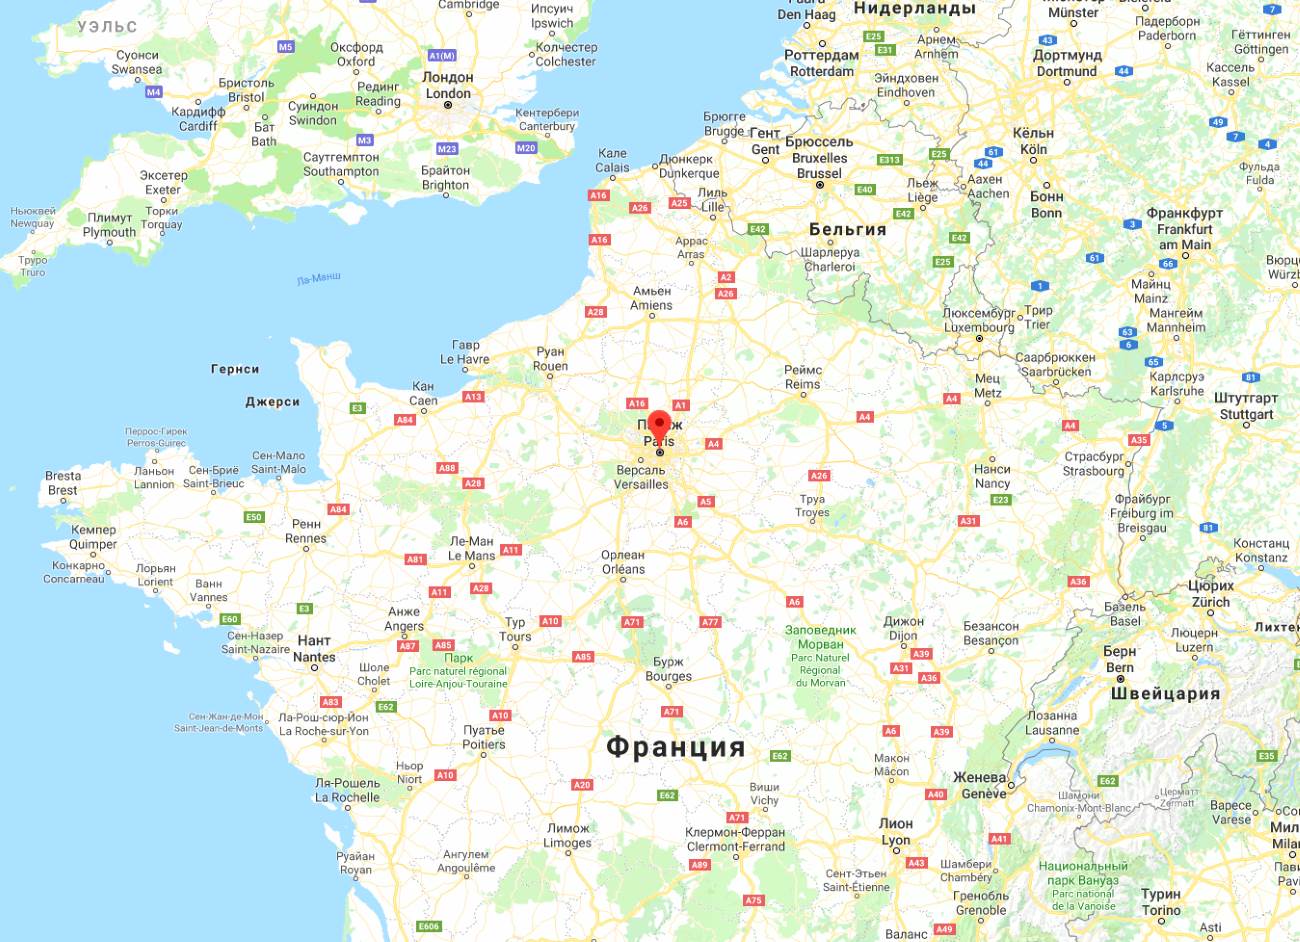 Расположение Парижа на карте мира